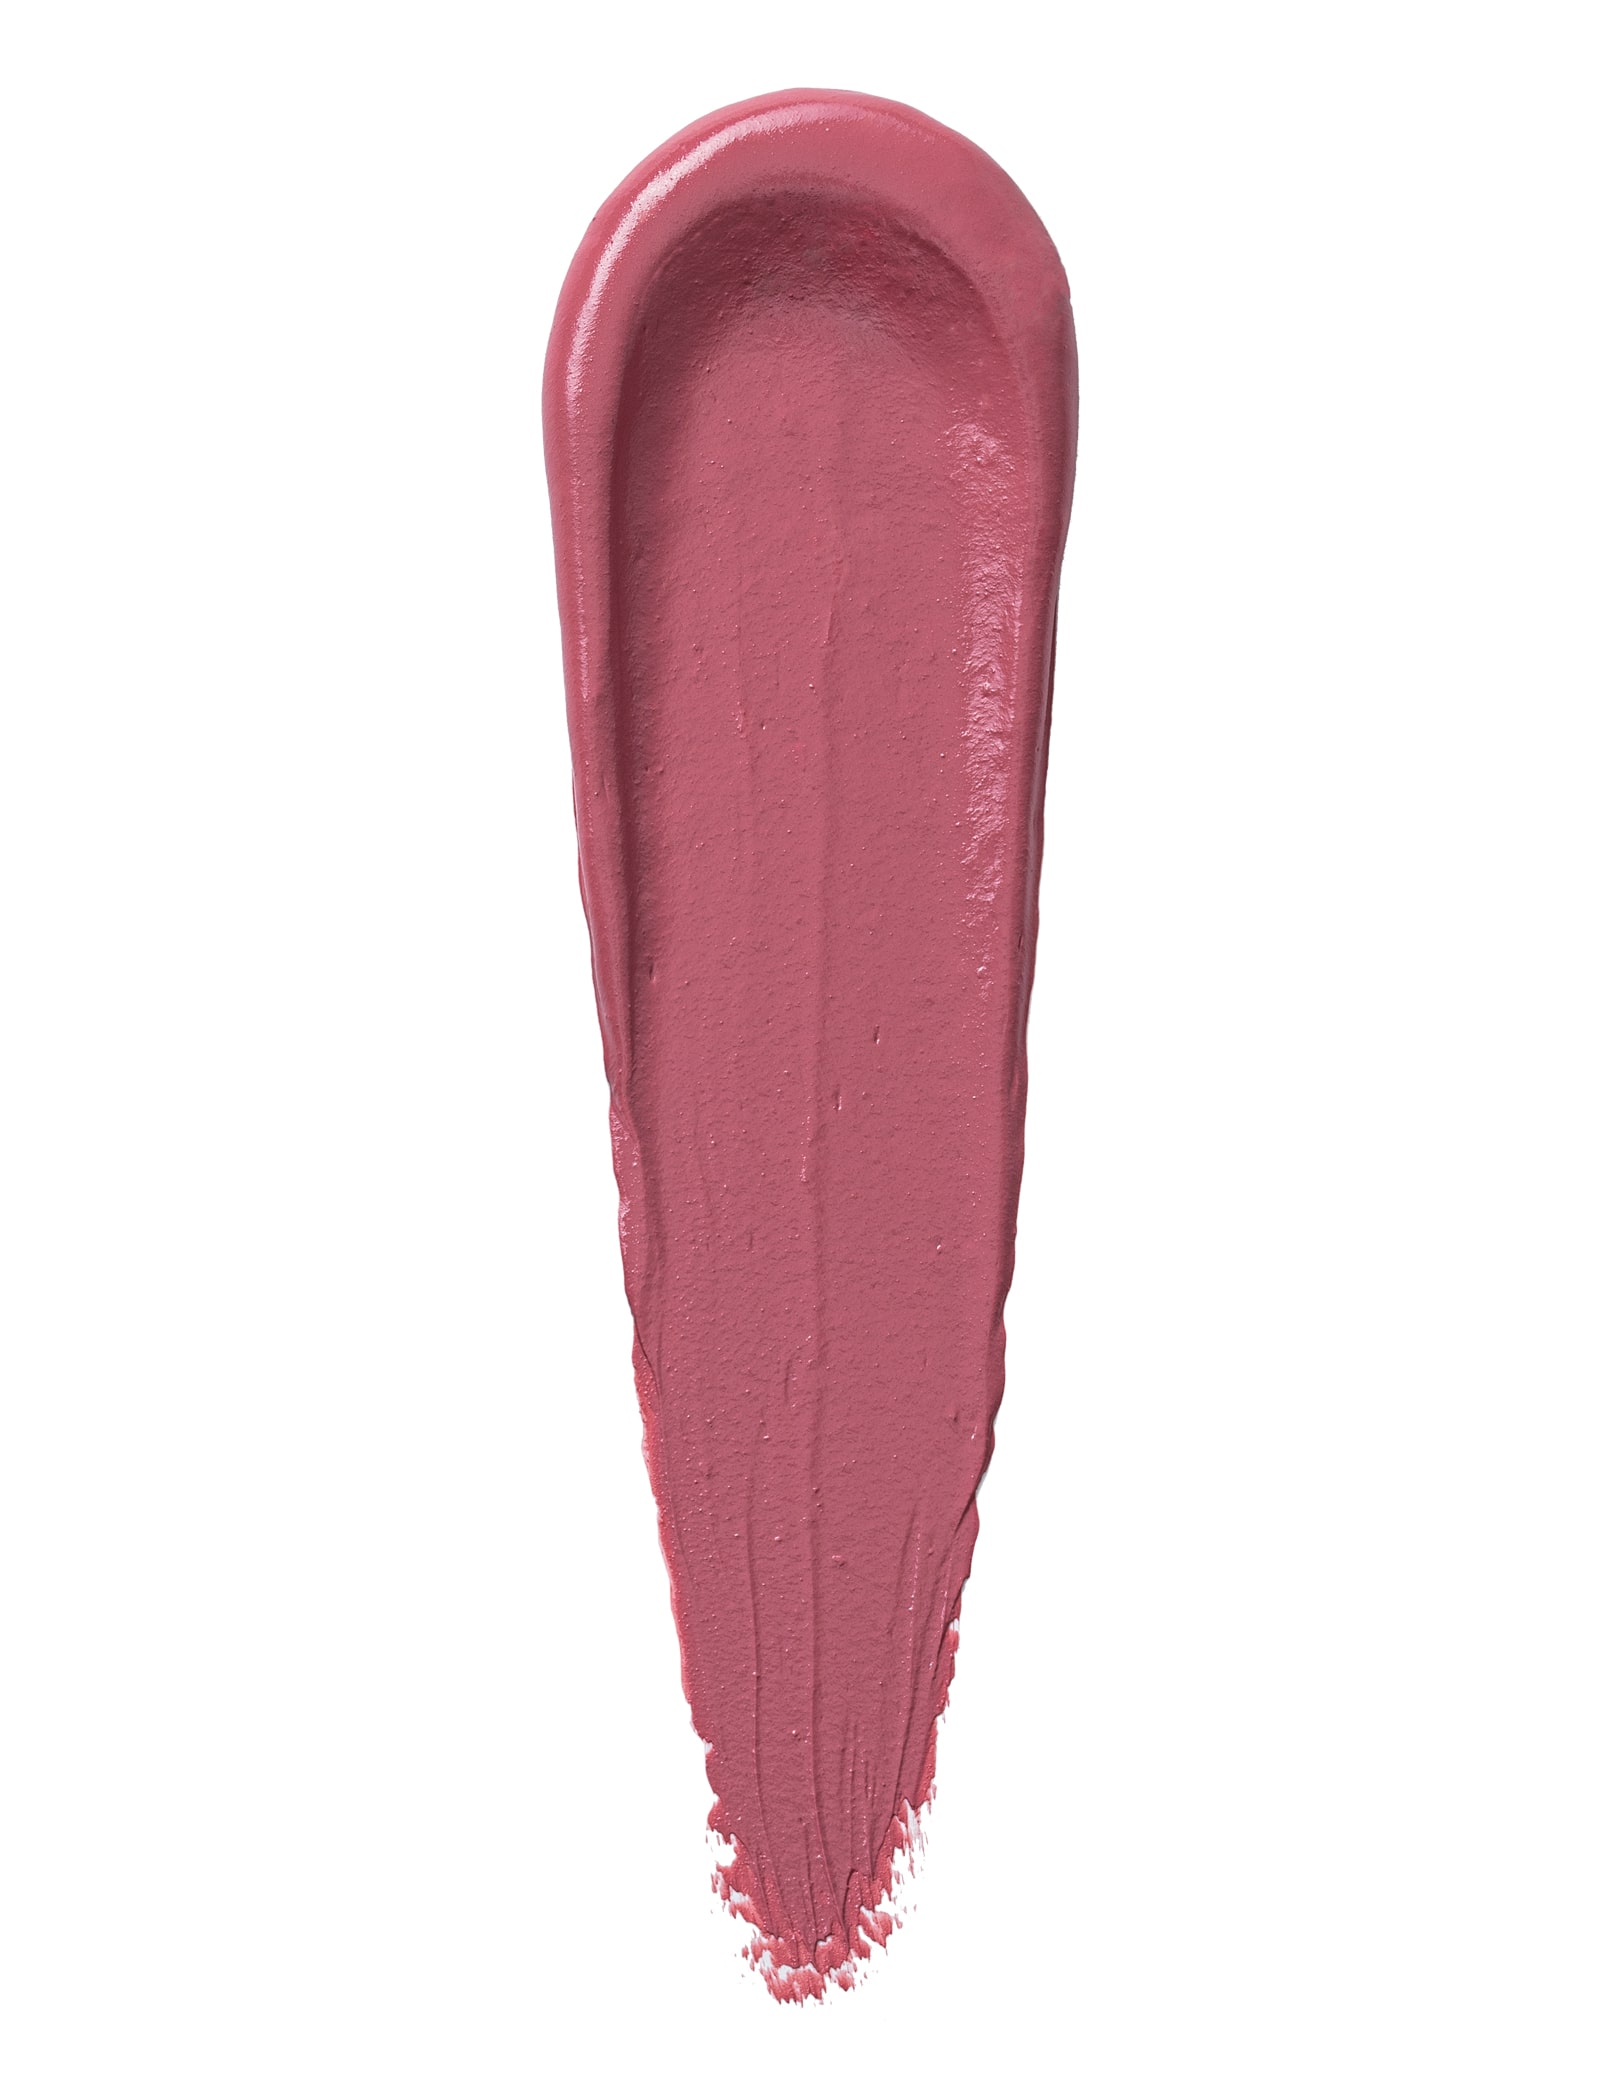 Silk Matte Liquid Lipstick - 019 Pink Stone